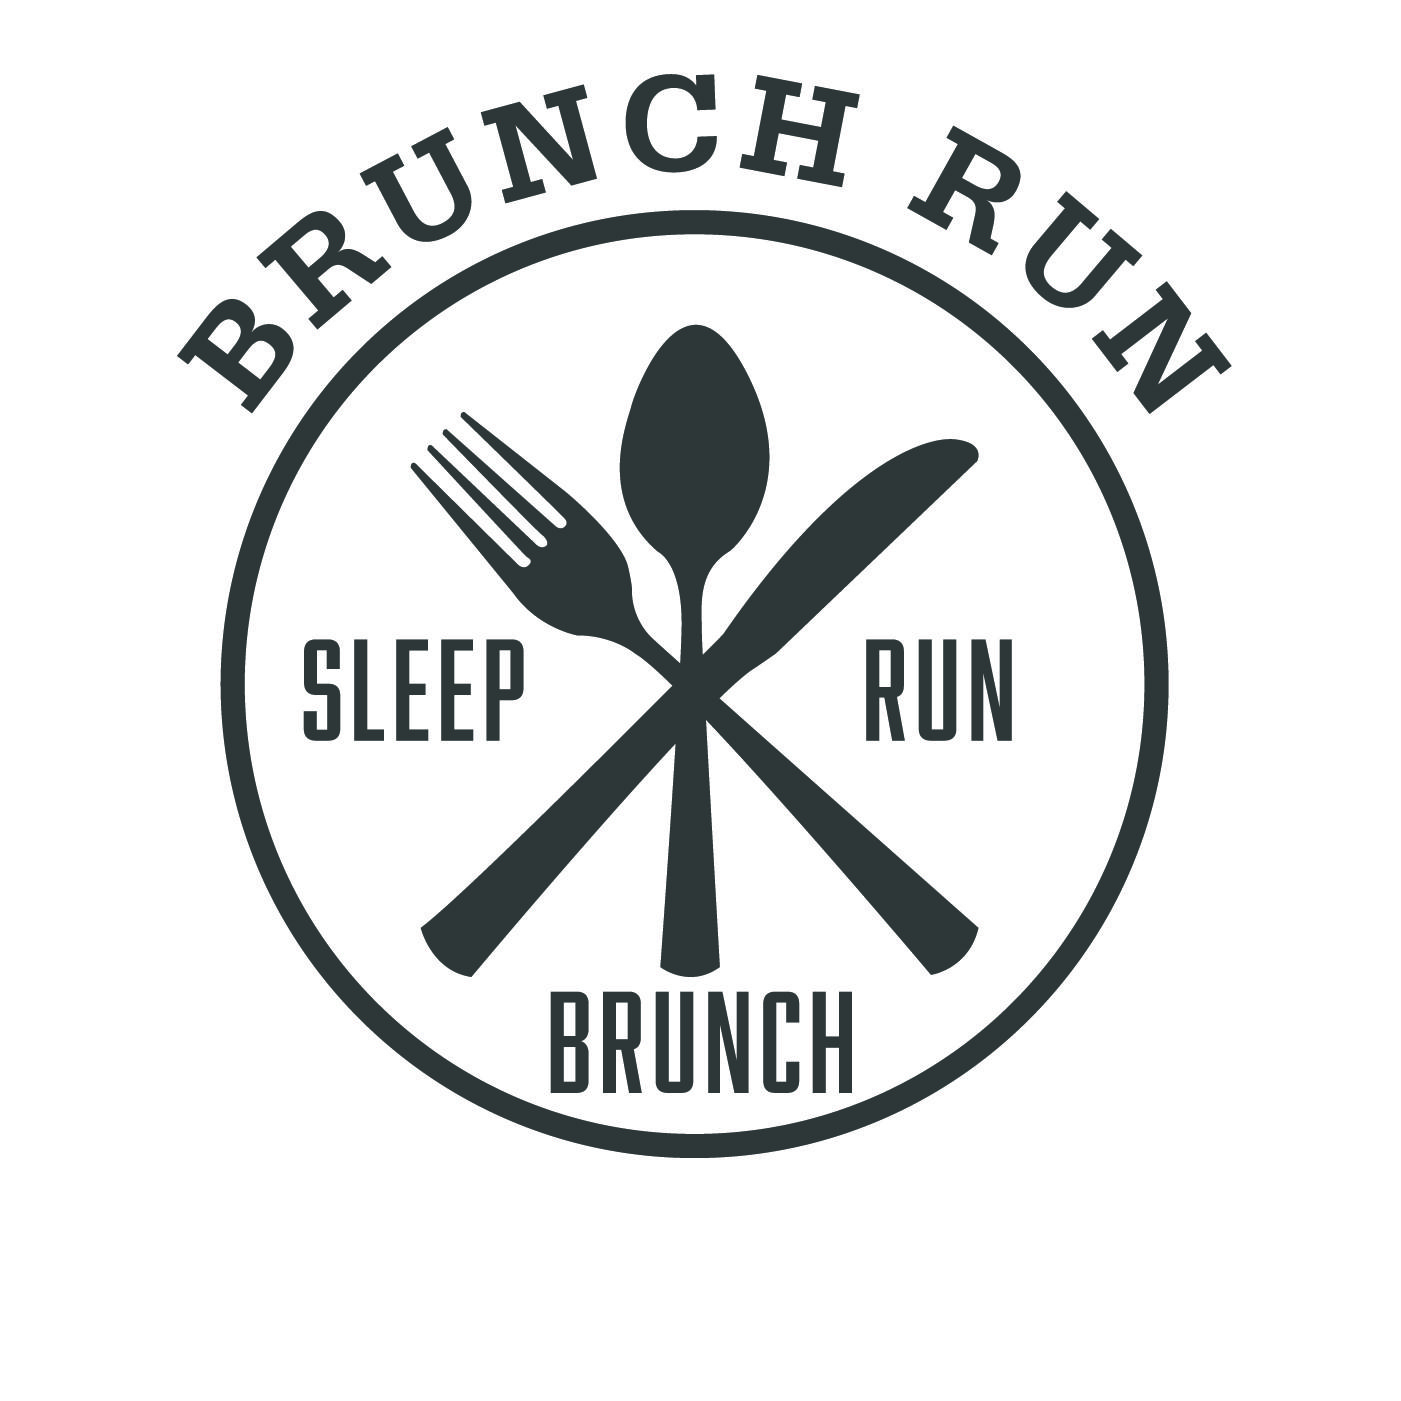 Brunch Logo - Seattle magazine's Brunch Run